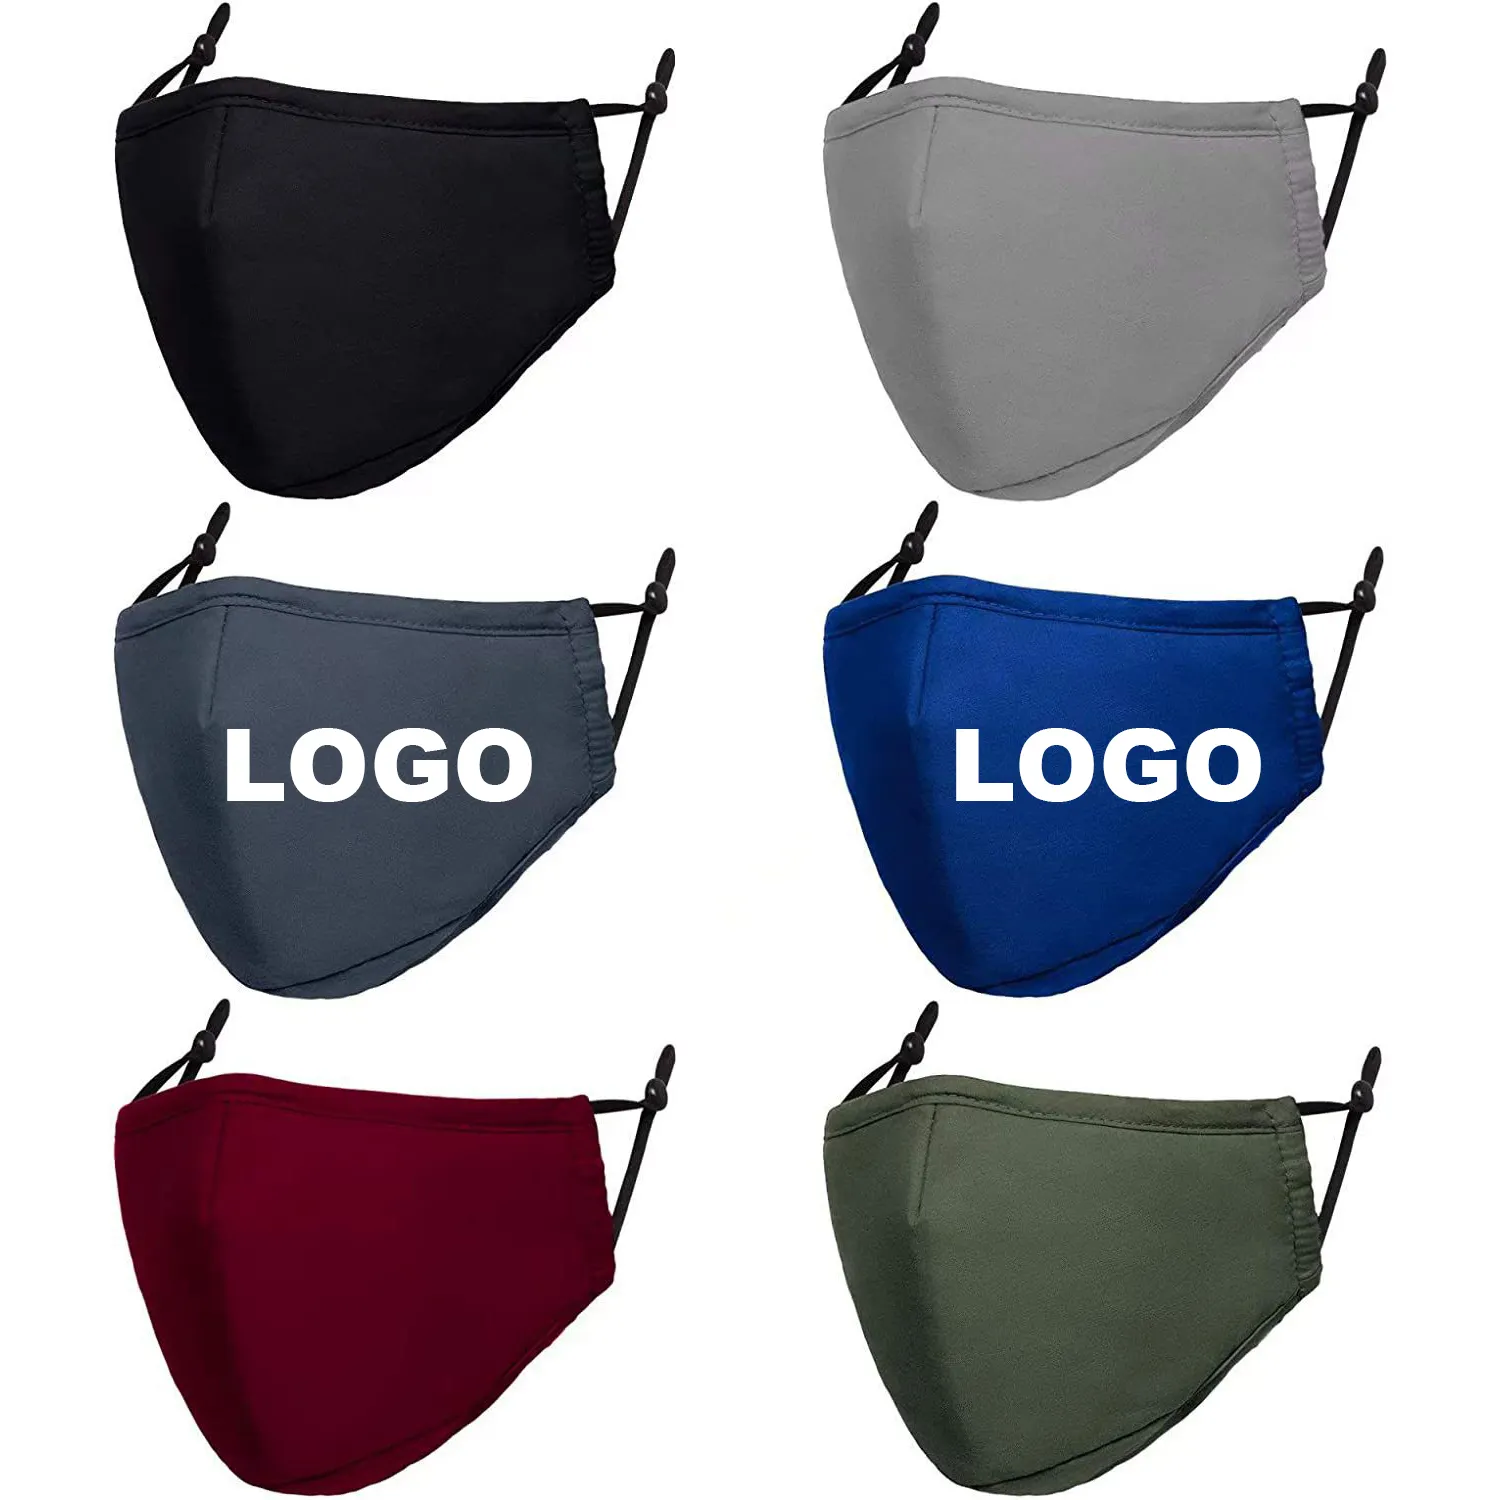 Personnalisé Coton Polyester Tissu Imprimé Logo Visage Masques Réutilisable Lavable Ajustable Masques pour Femmes Hommes